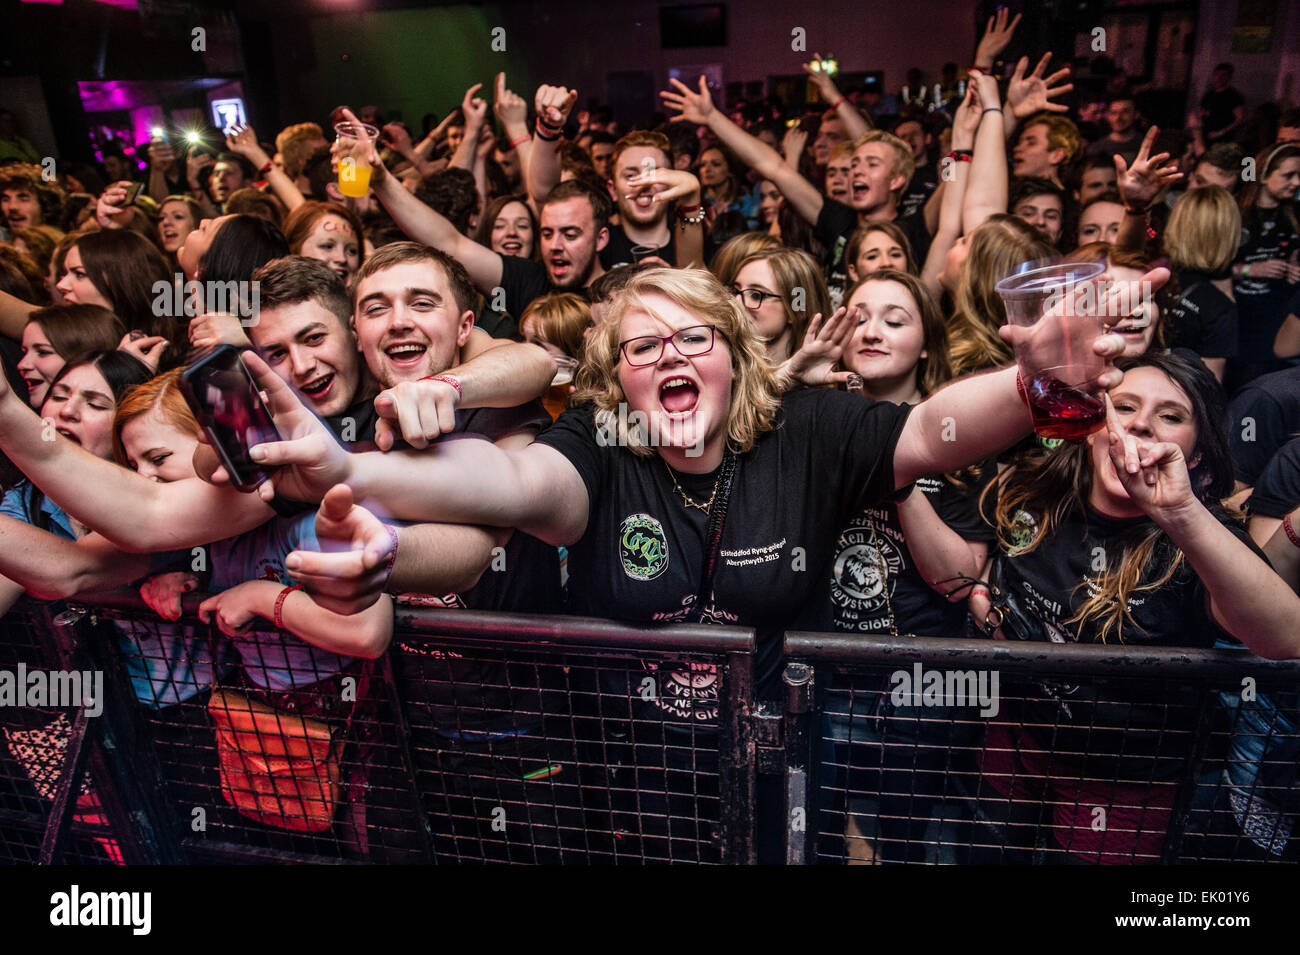 Partylöwen: Scharen von jungen College-Studenten amüsieren sich schreien und singen in einem walisischen Sprache Rockmusik Konzert Tanz Partynacht in Aberystwyth University Studenten Union. Stockfoto